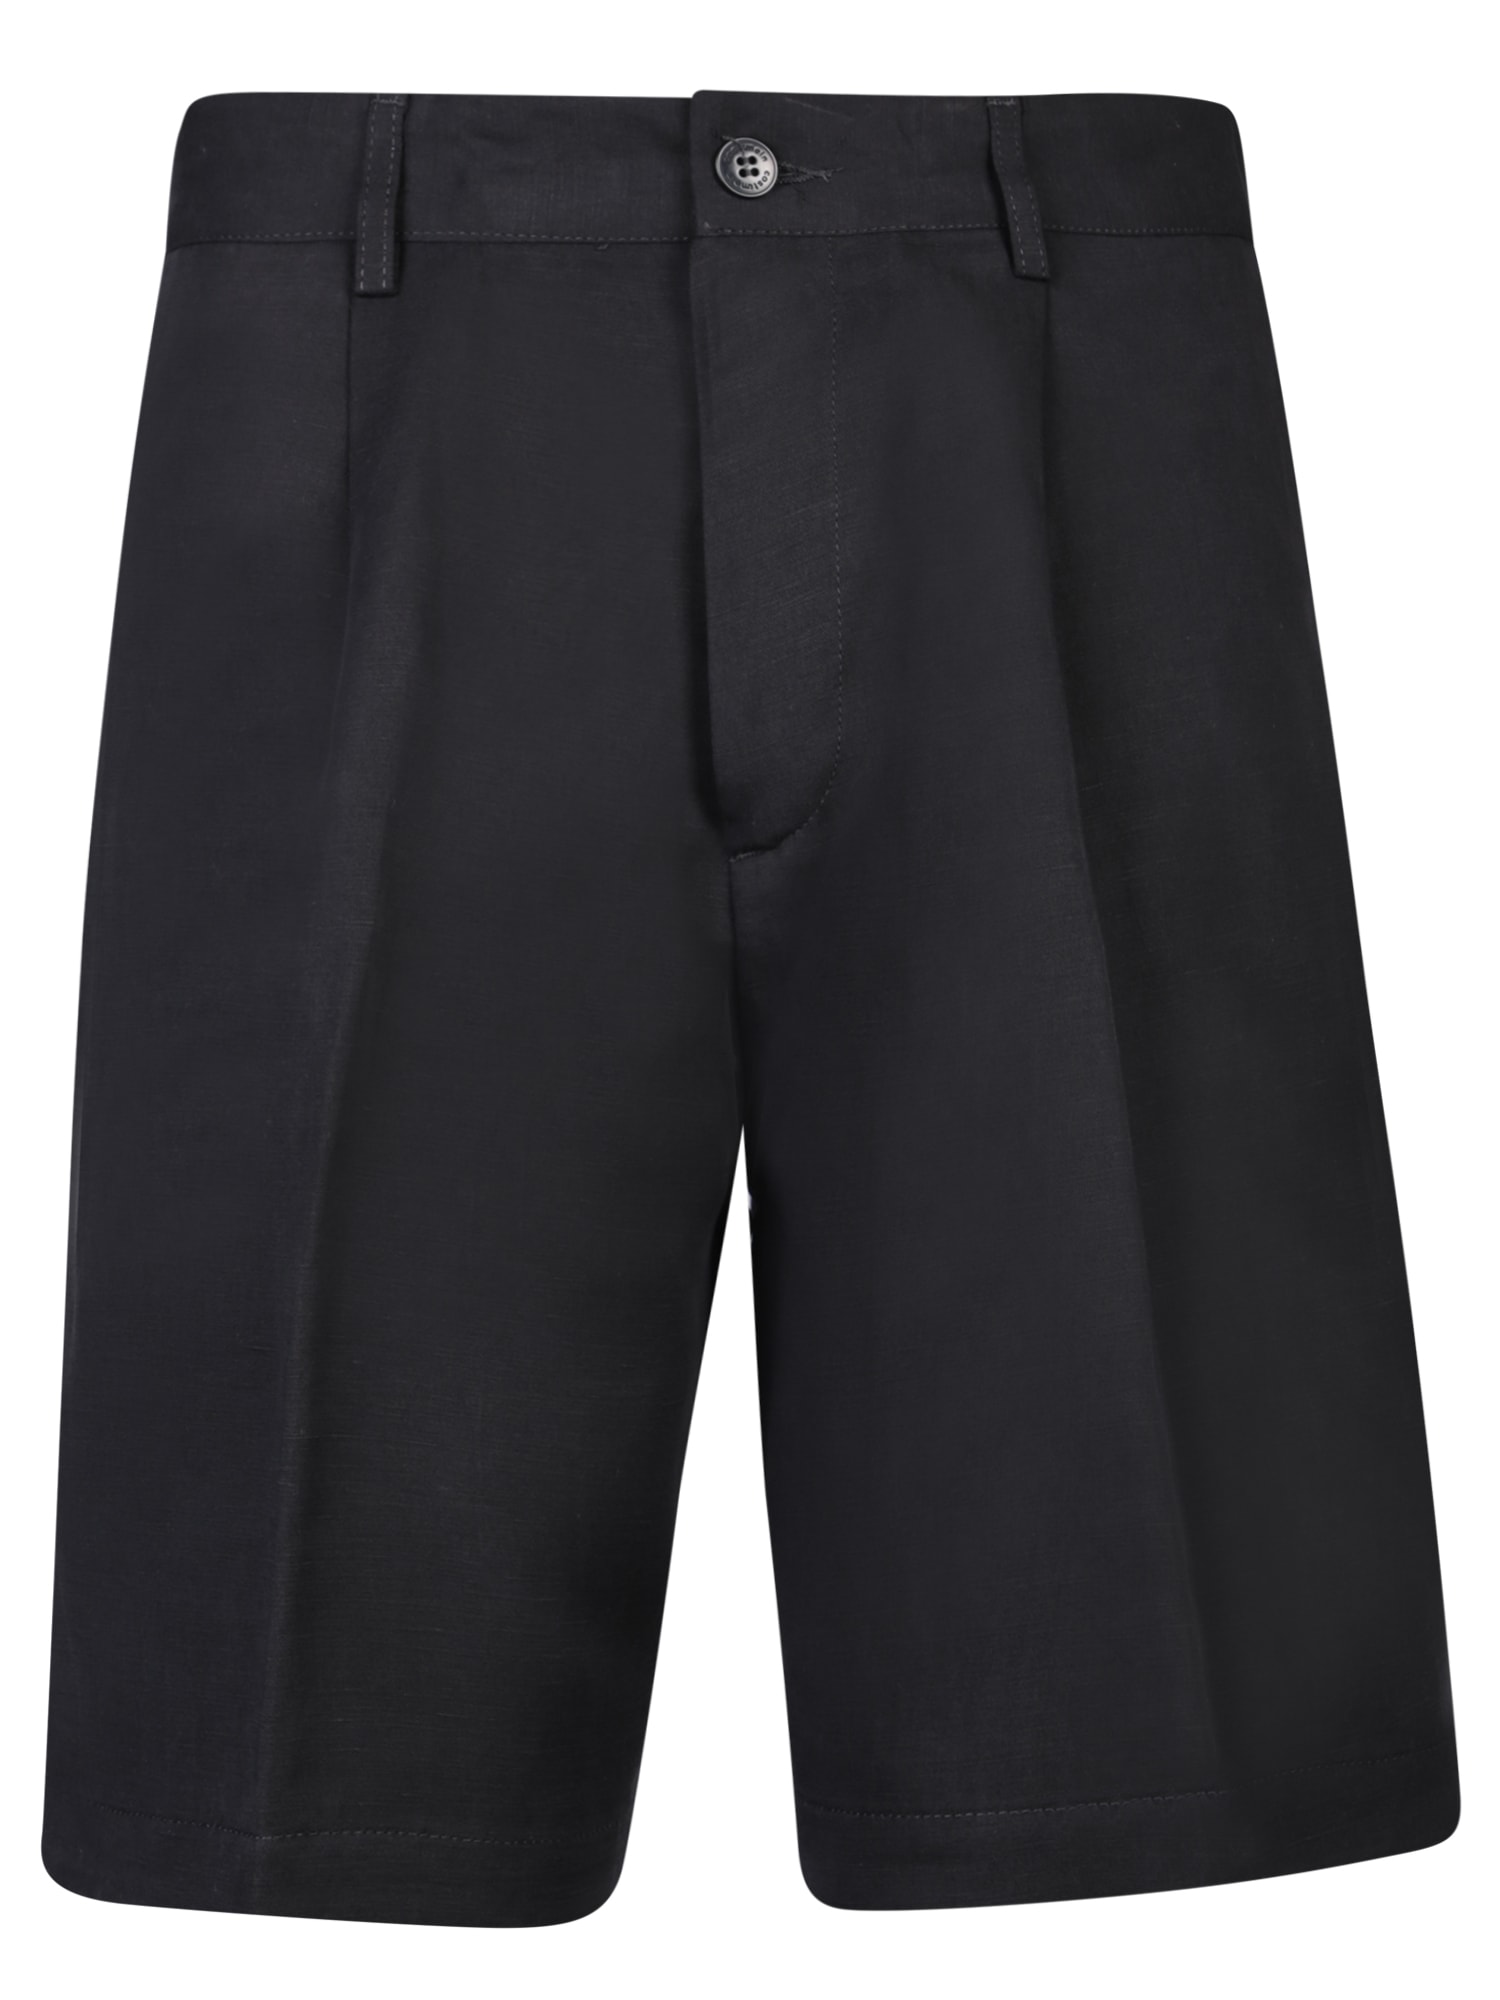 Visentin Black Bermuda Shorts